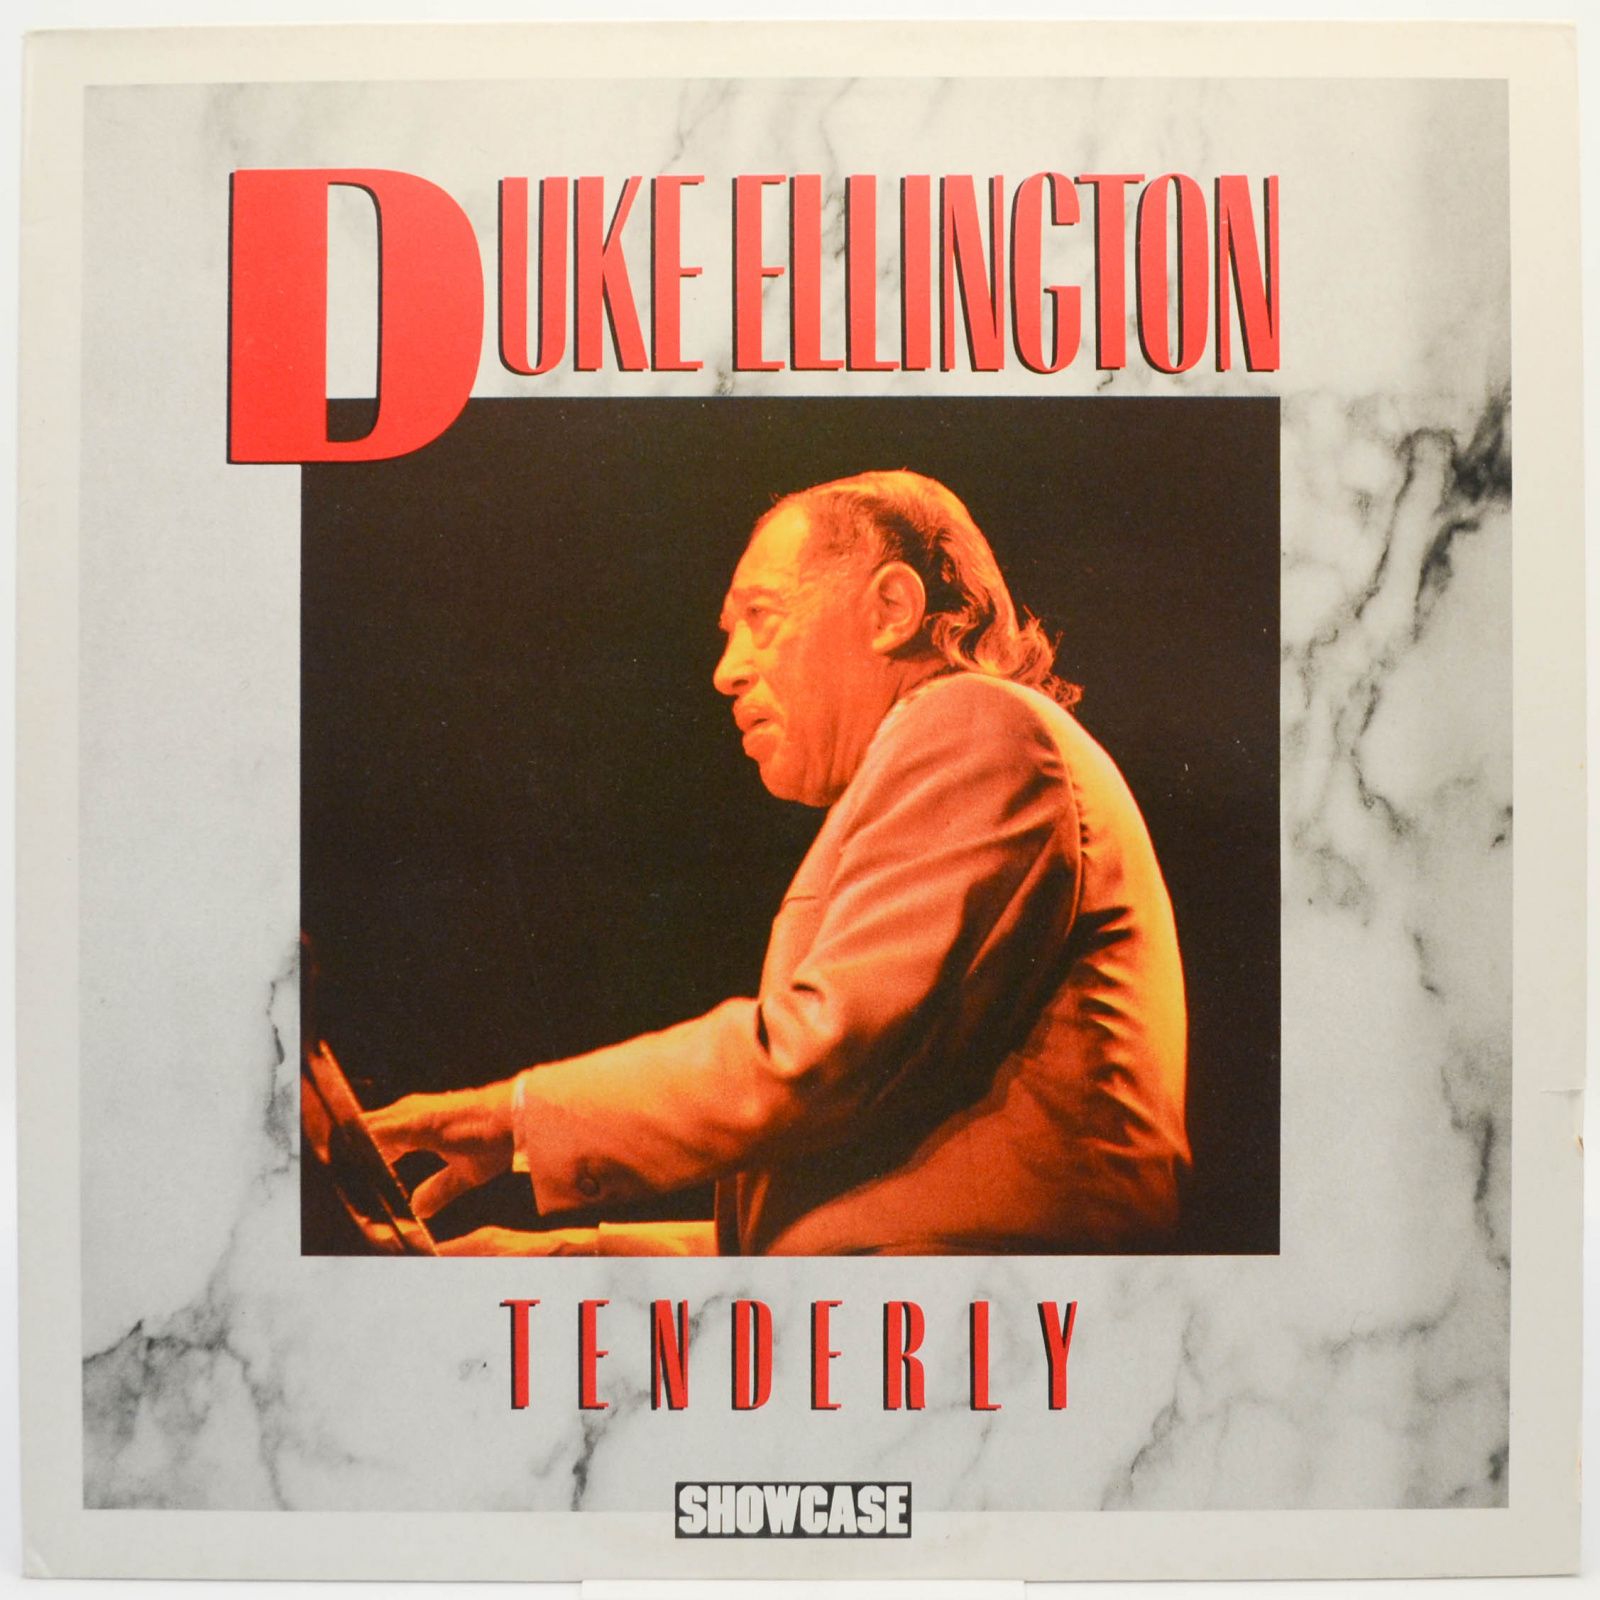 Duke Ellington — Tenderly, 1985